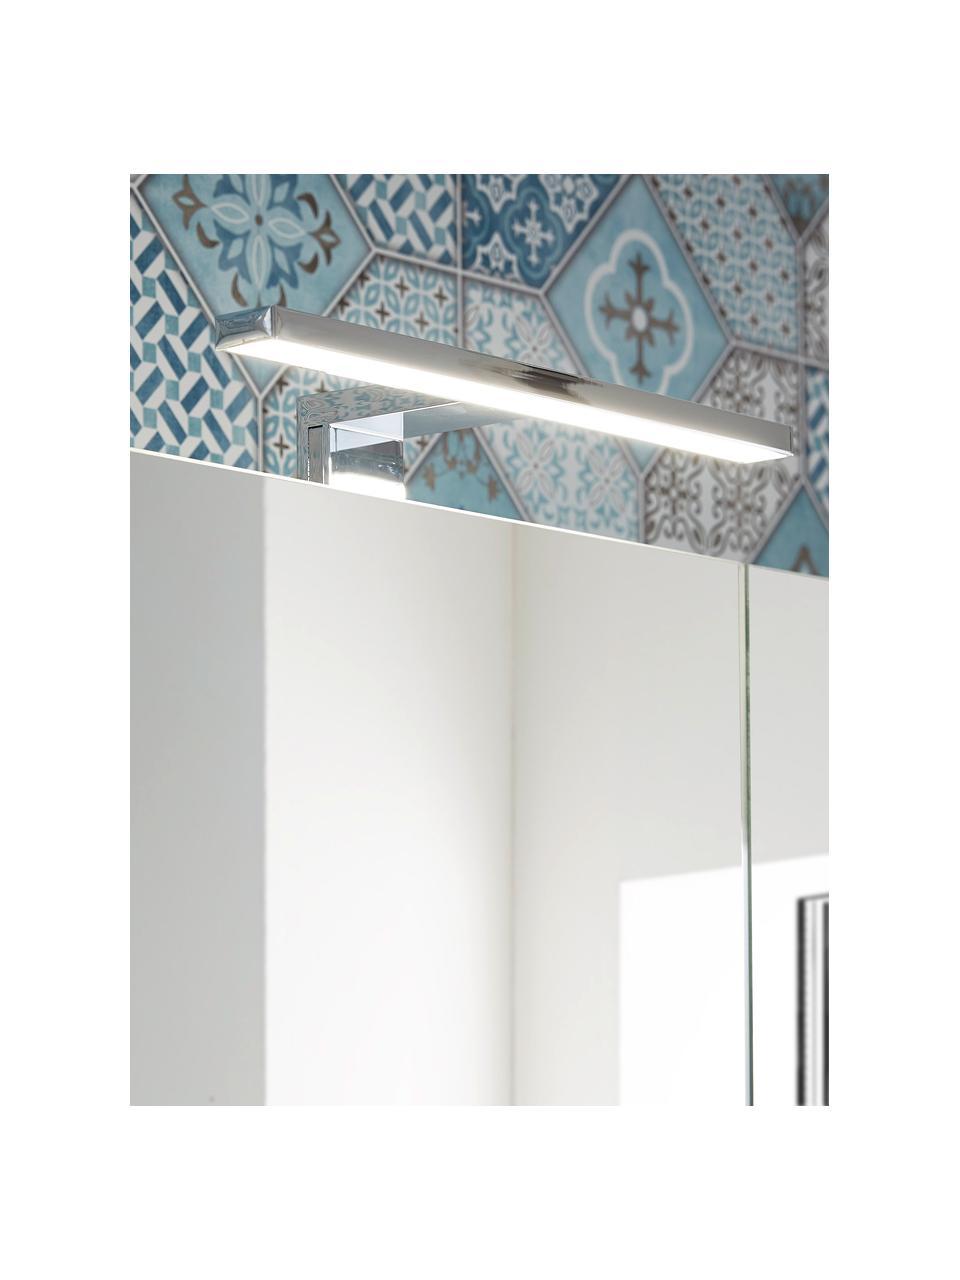 Bad-Spiegelschrank Elisa mit LED-Beleuchtung, B 76 cm, Korpus: Spanplatte, melaminbeschi, Spiegelfläche: Spiegelglas, Off White, Silberfarben, B 76 x H 71 cm